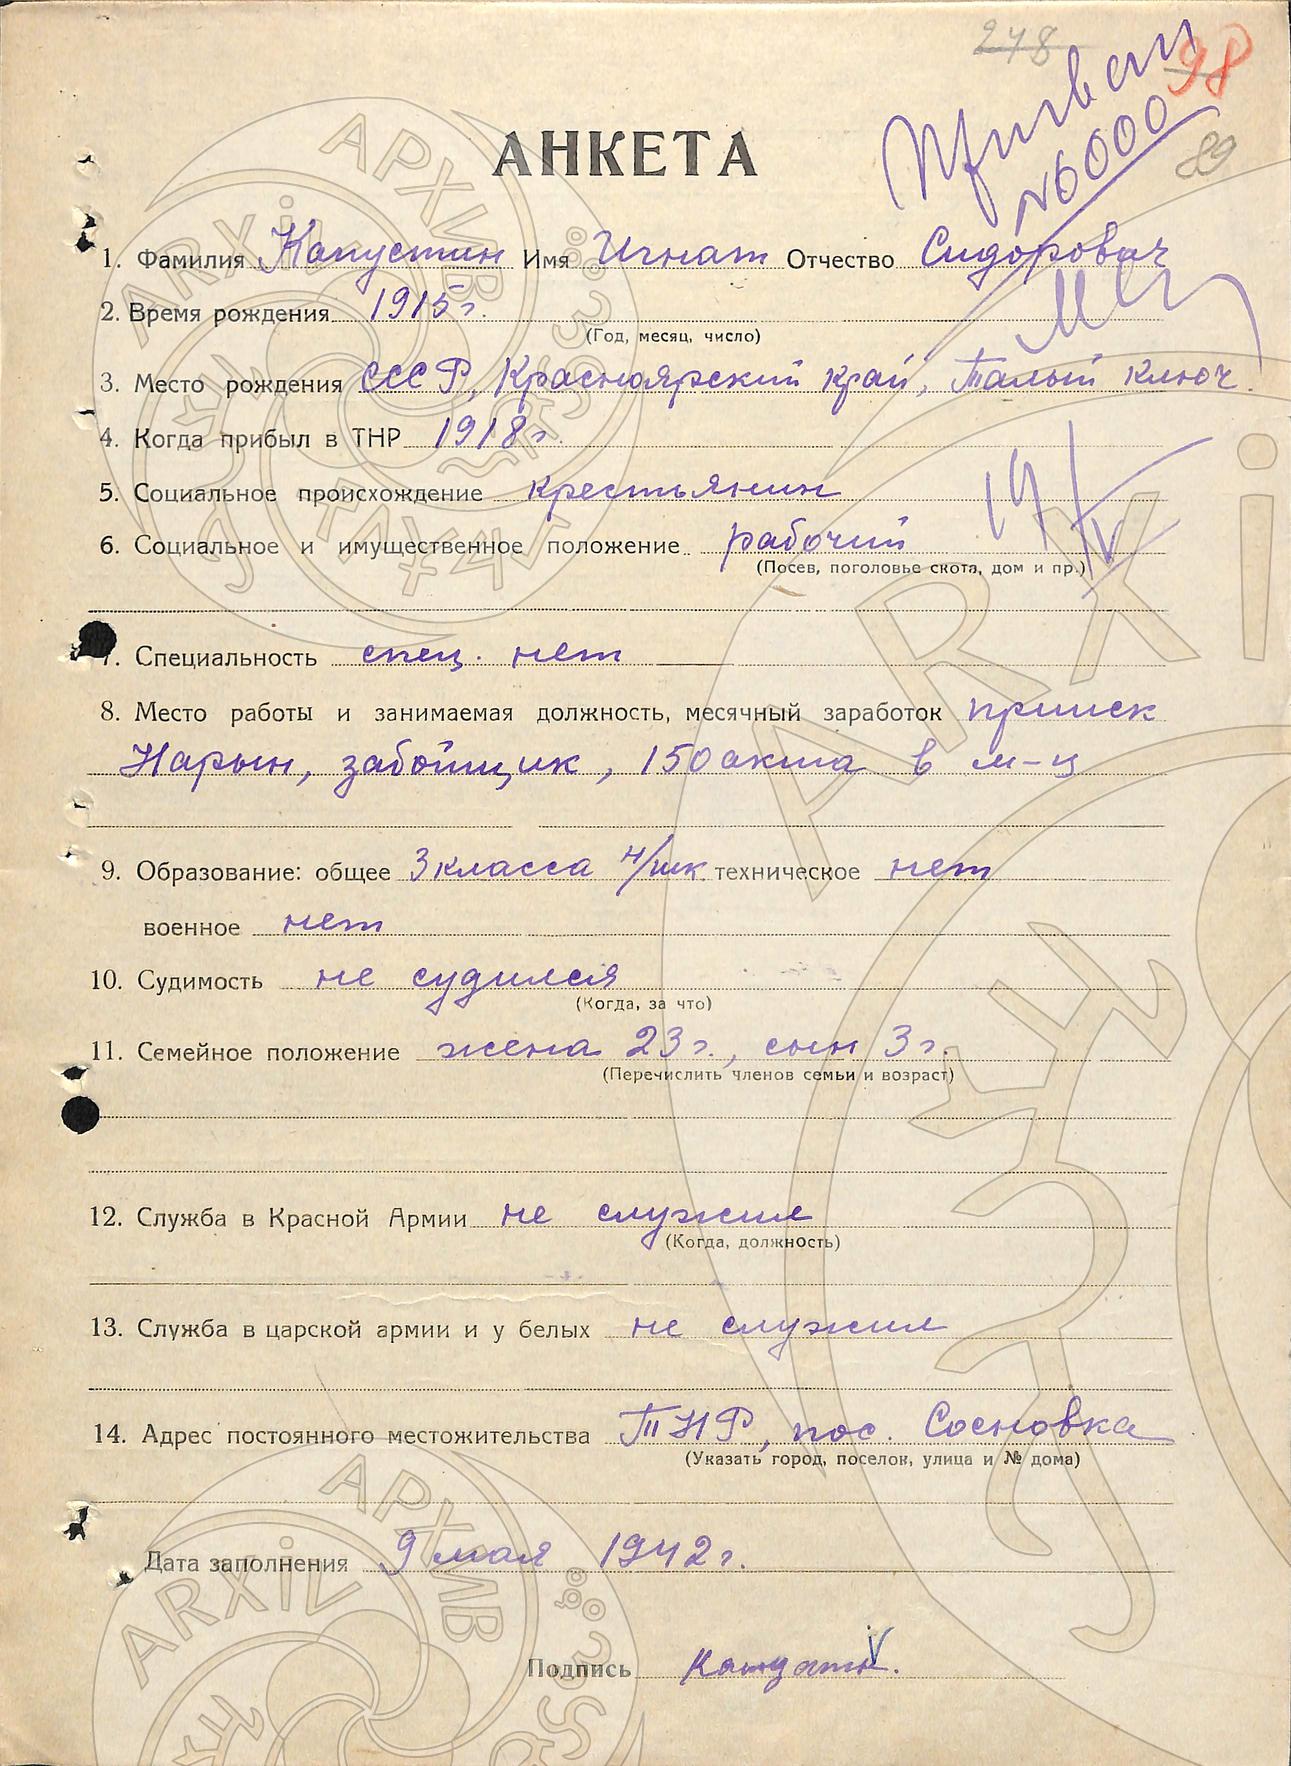 Анкеты и характеристики на призванных в РККА